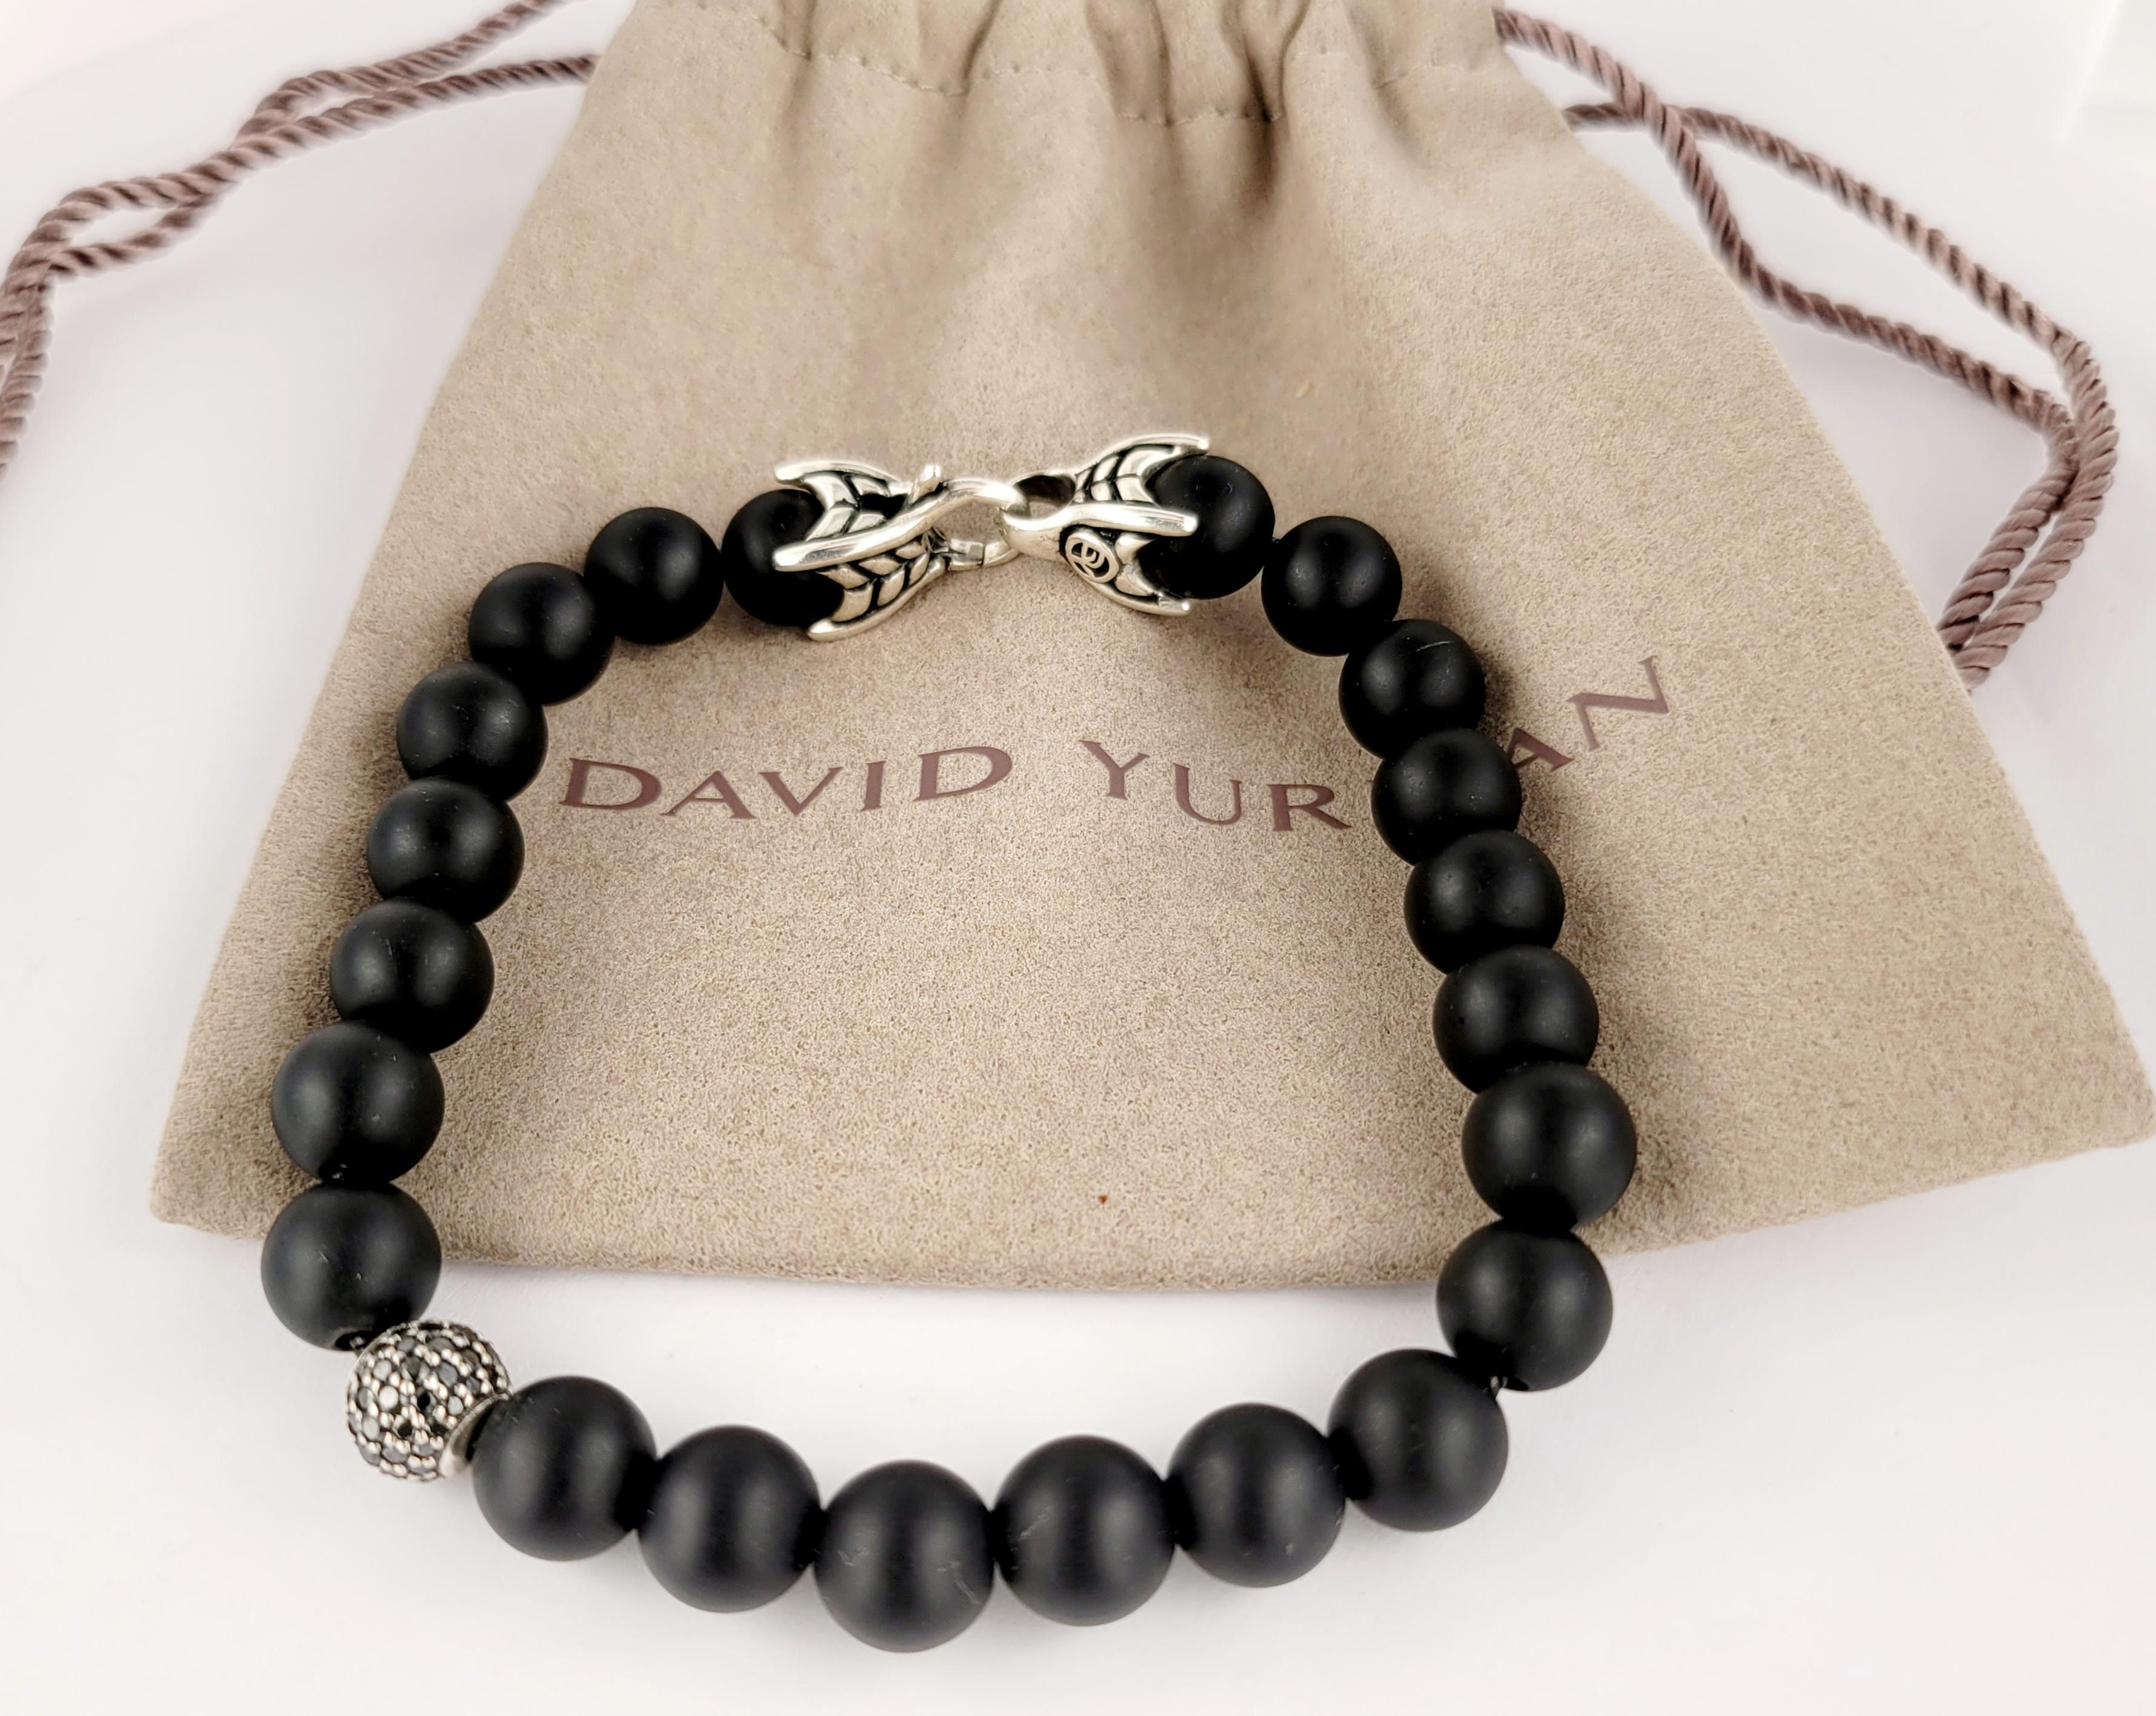 Bracelet de perles spirituelles David Yurman
Matériau Argent Sterling 
Pureté du métal 925
Diamants noirs sertis en pavé, poids total de 0.82 carat.
Largeur du bracelet 8mm
Longueur du bracelet 8'' Long d'un bout à l'autre''.
Poids du bracelet